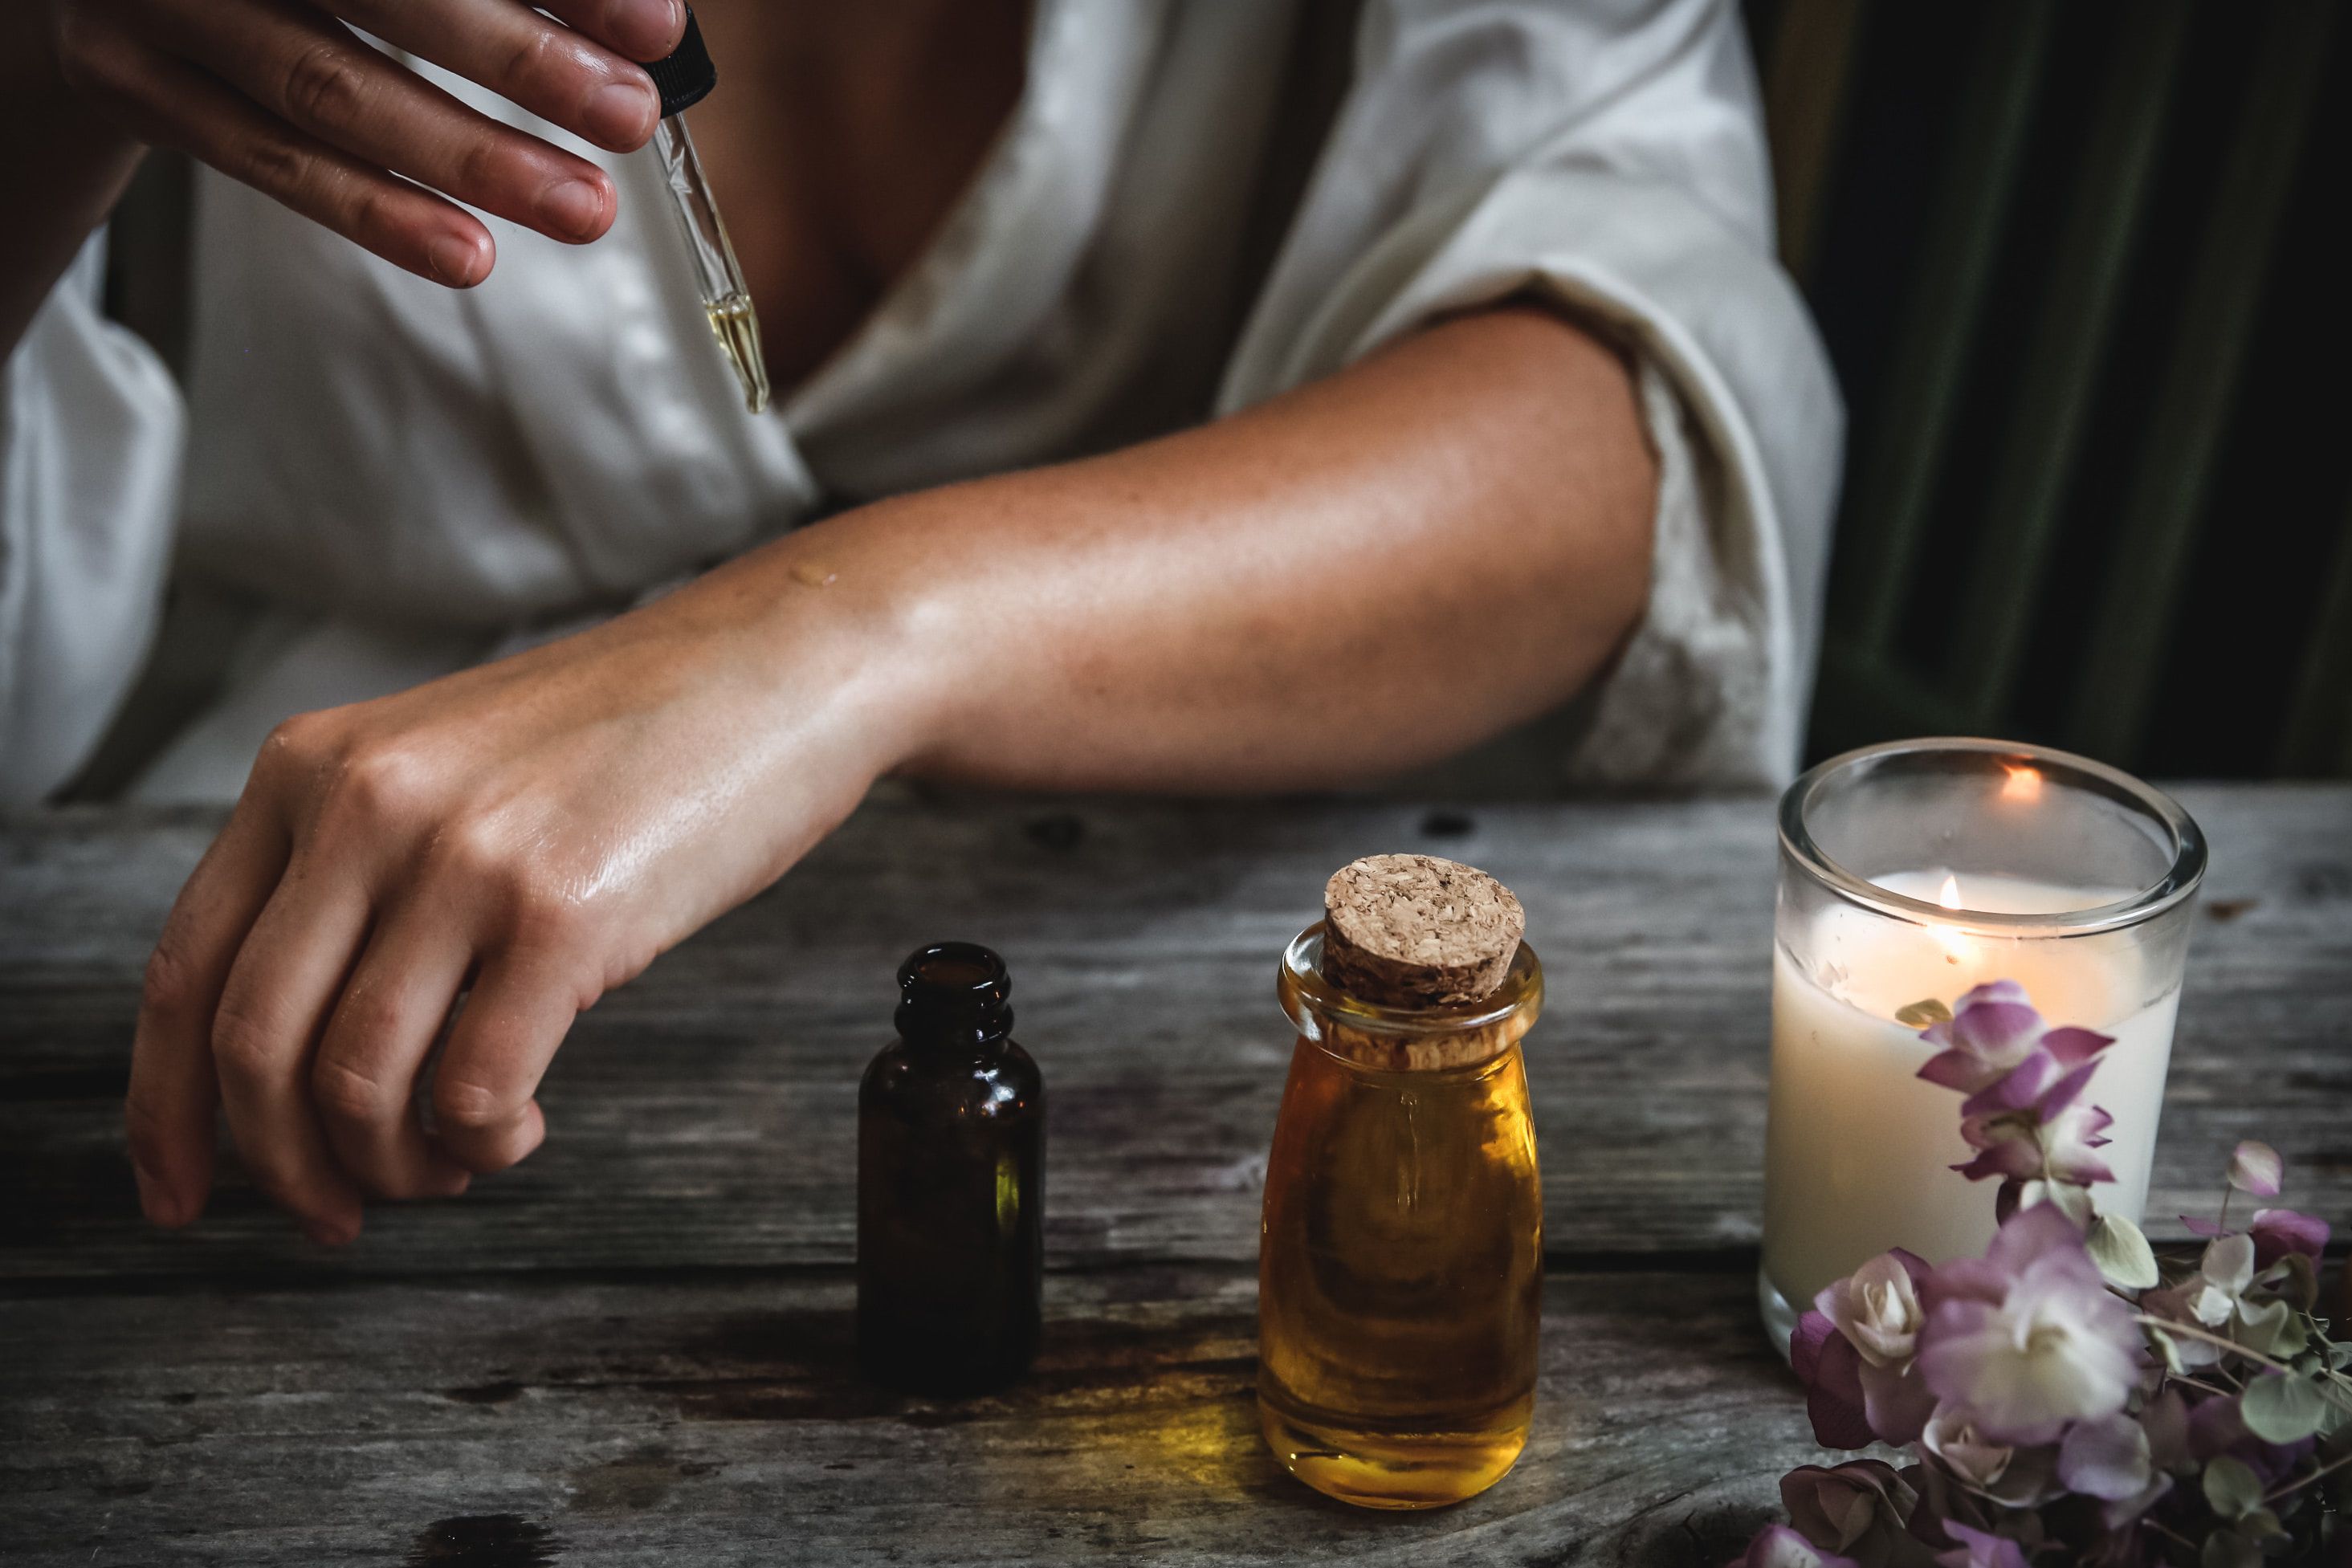 aromaterapia: ¿sirve o no para mejorar la salud?